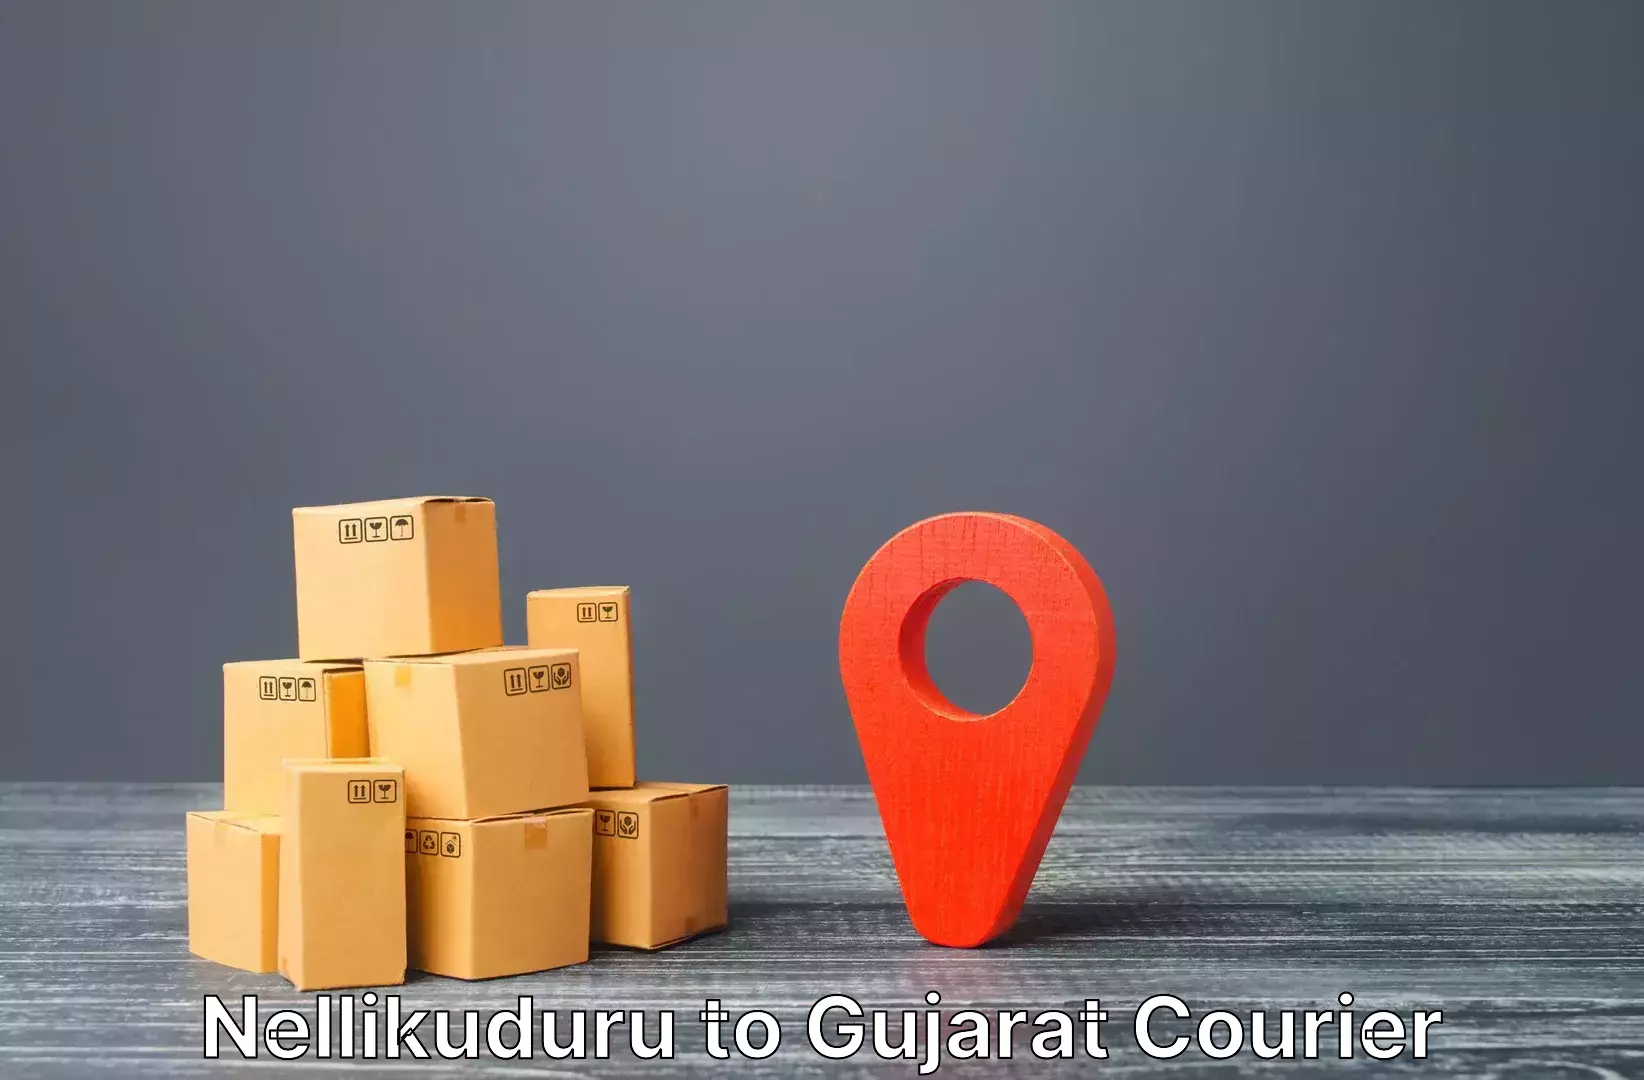 Customized luggage delivery Nellikuduru to Godhra